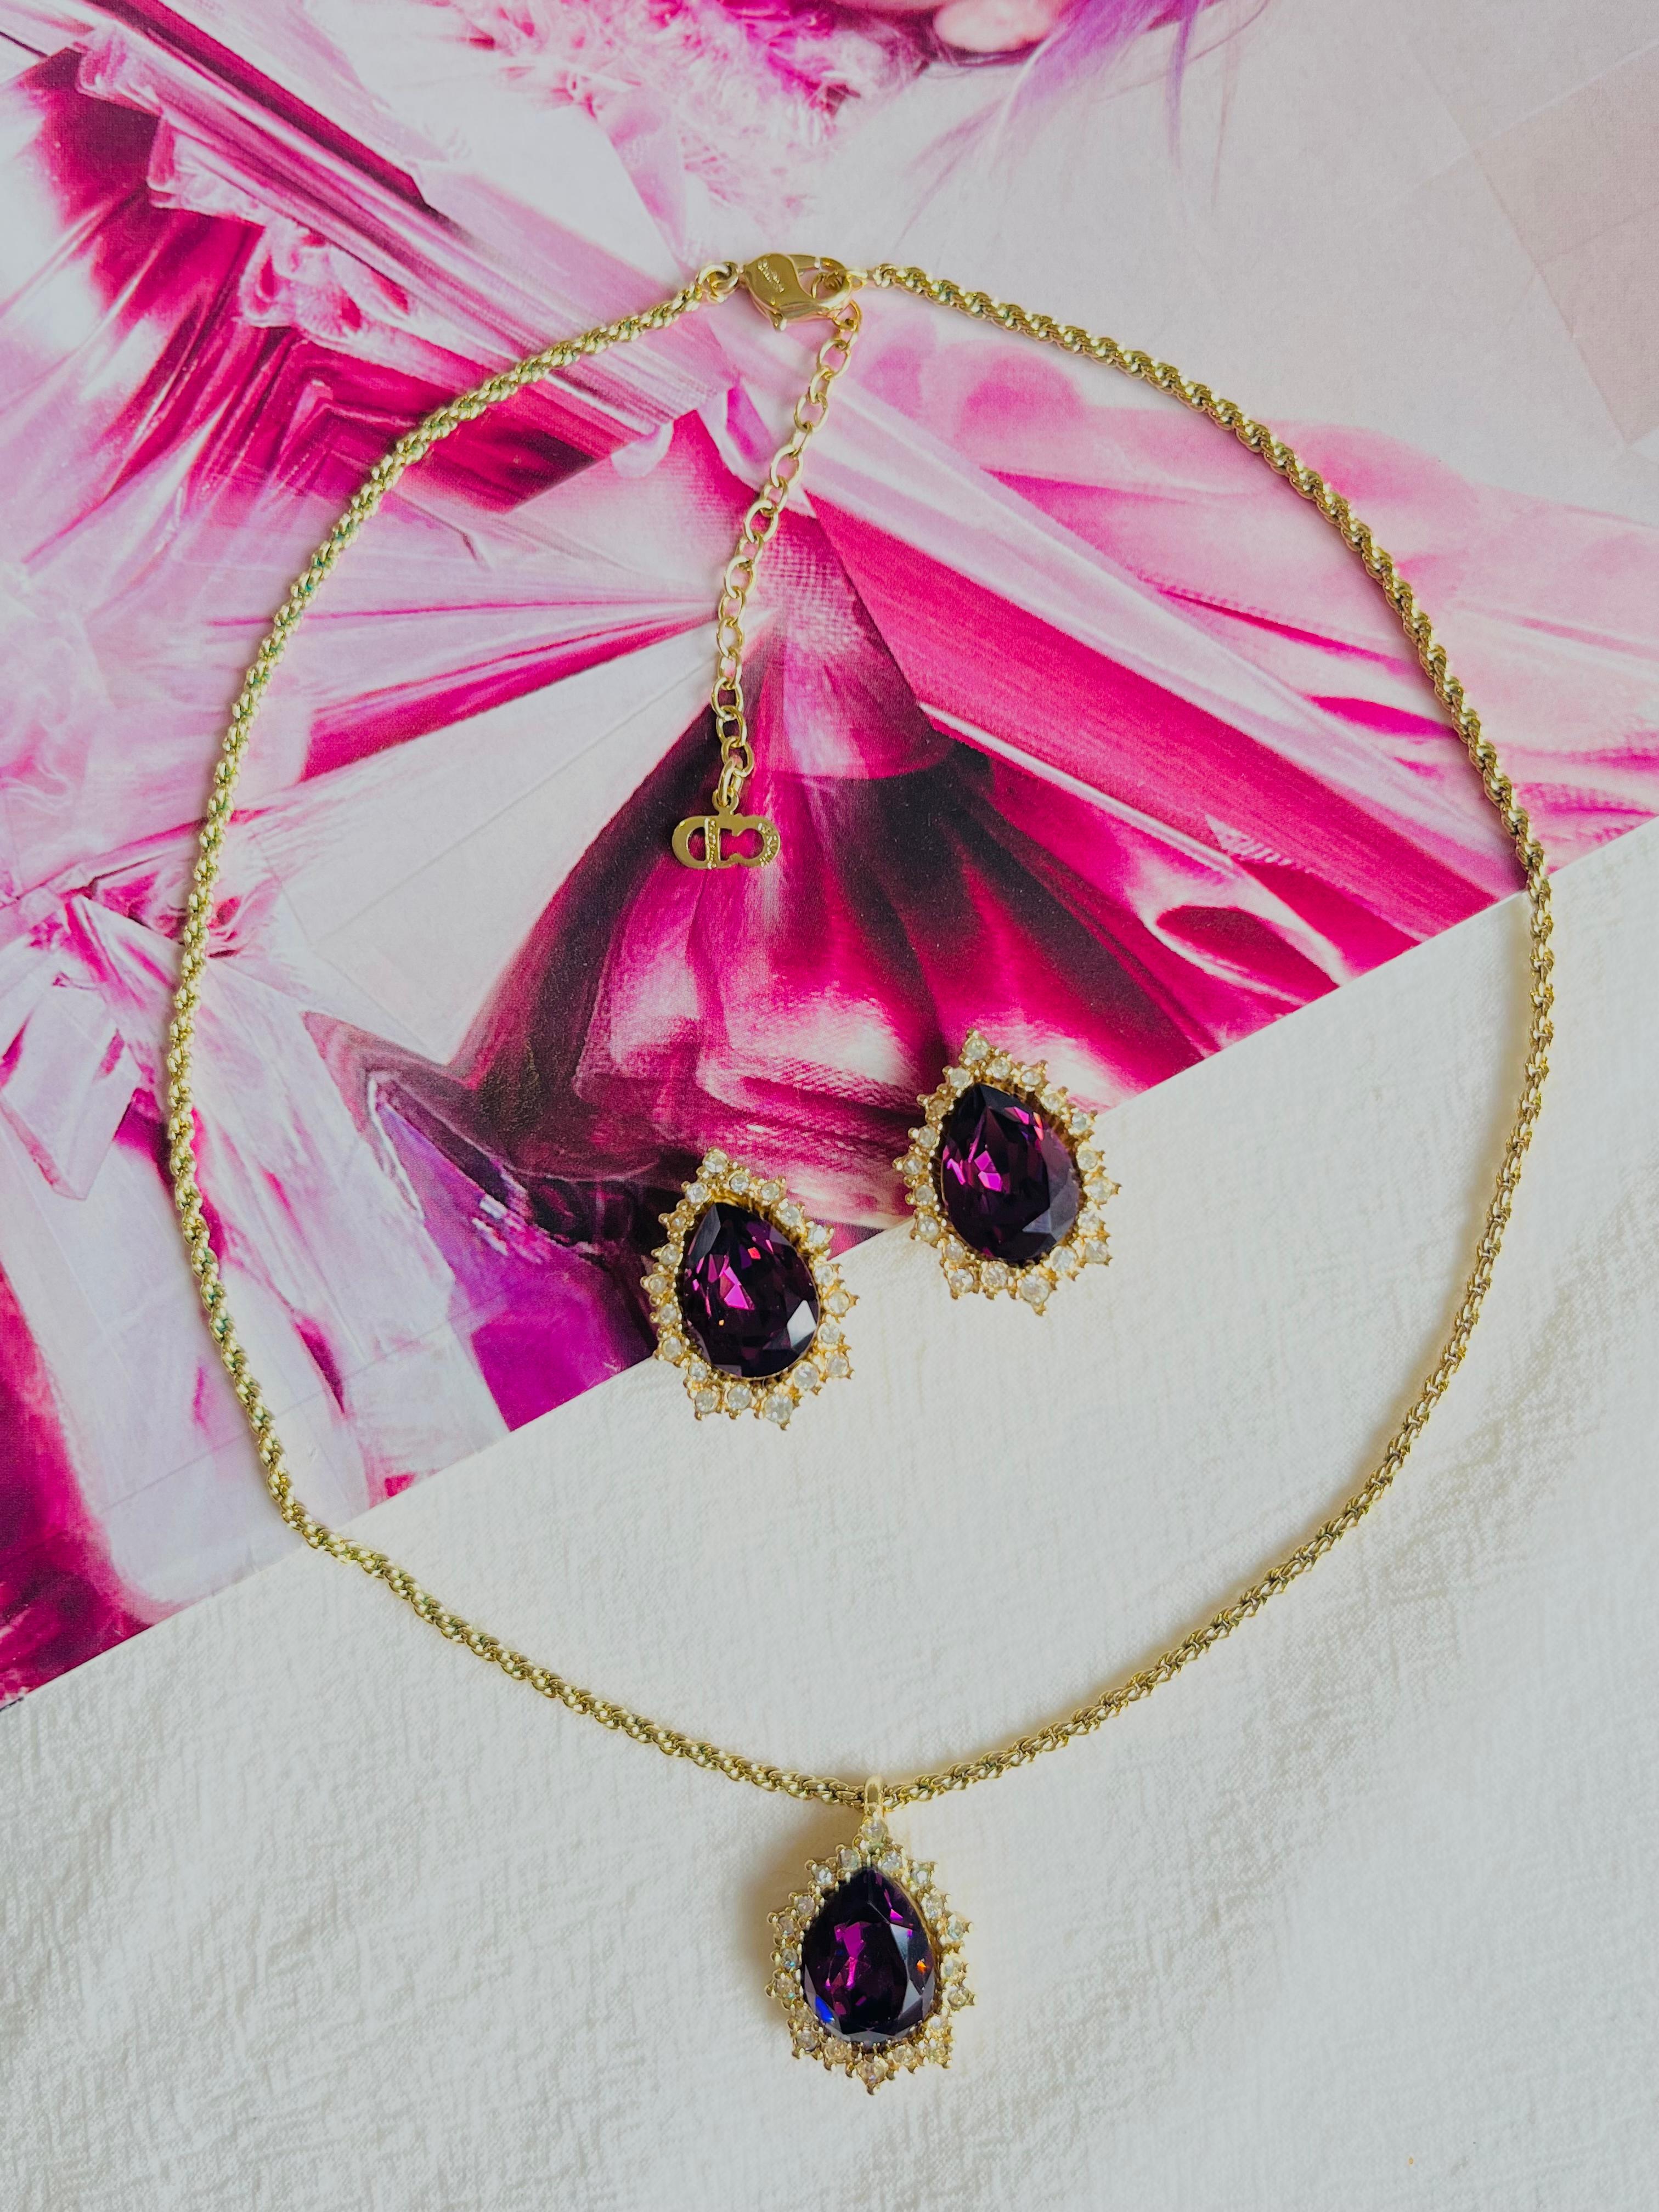 Christian Dior Vintage 1980 lila Amethyst Halo Teardrop Geschenk-Set, Anhänger Halskette Ohrringe, Gold-Ton

Sehr guter Zustand. 100% echt. Vintage und selten zu finden.

Signiert 